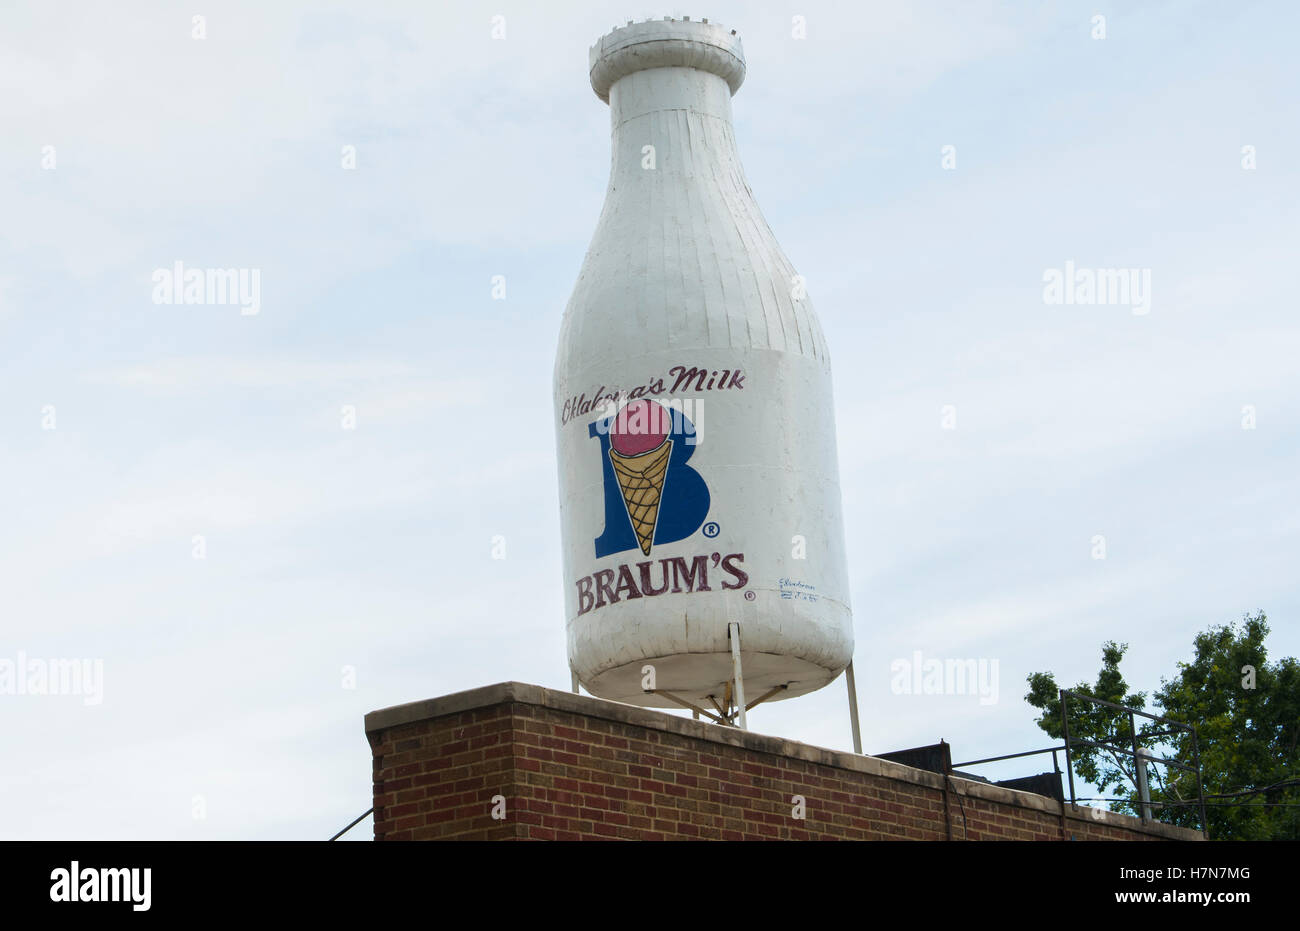 Oklahoma City Oklahoma OKC, OK, berühmte Milch Flasche Gebäude von Braums Molkerei Milch Flasche auf Dach Stockfoto